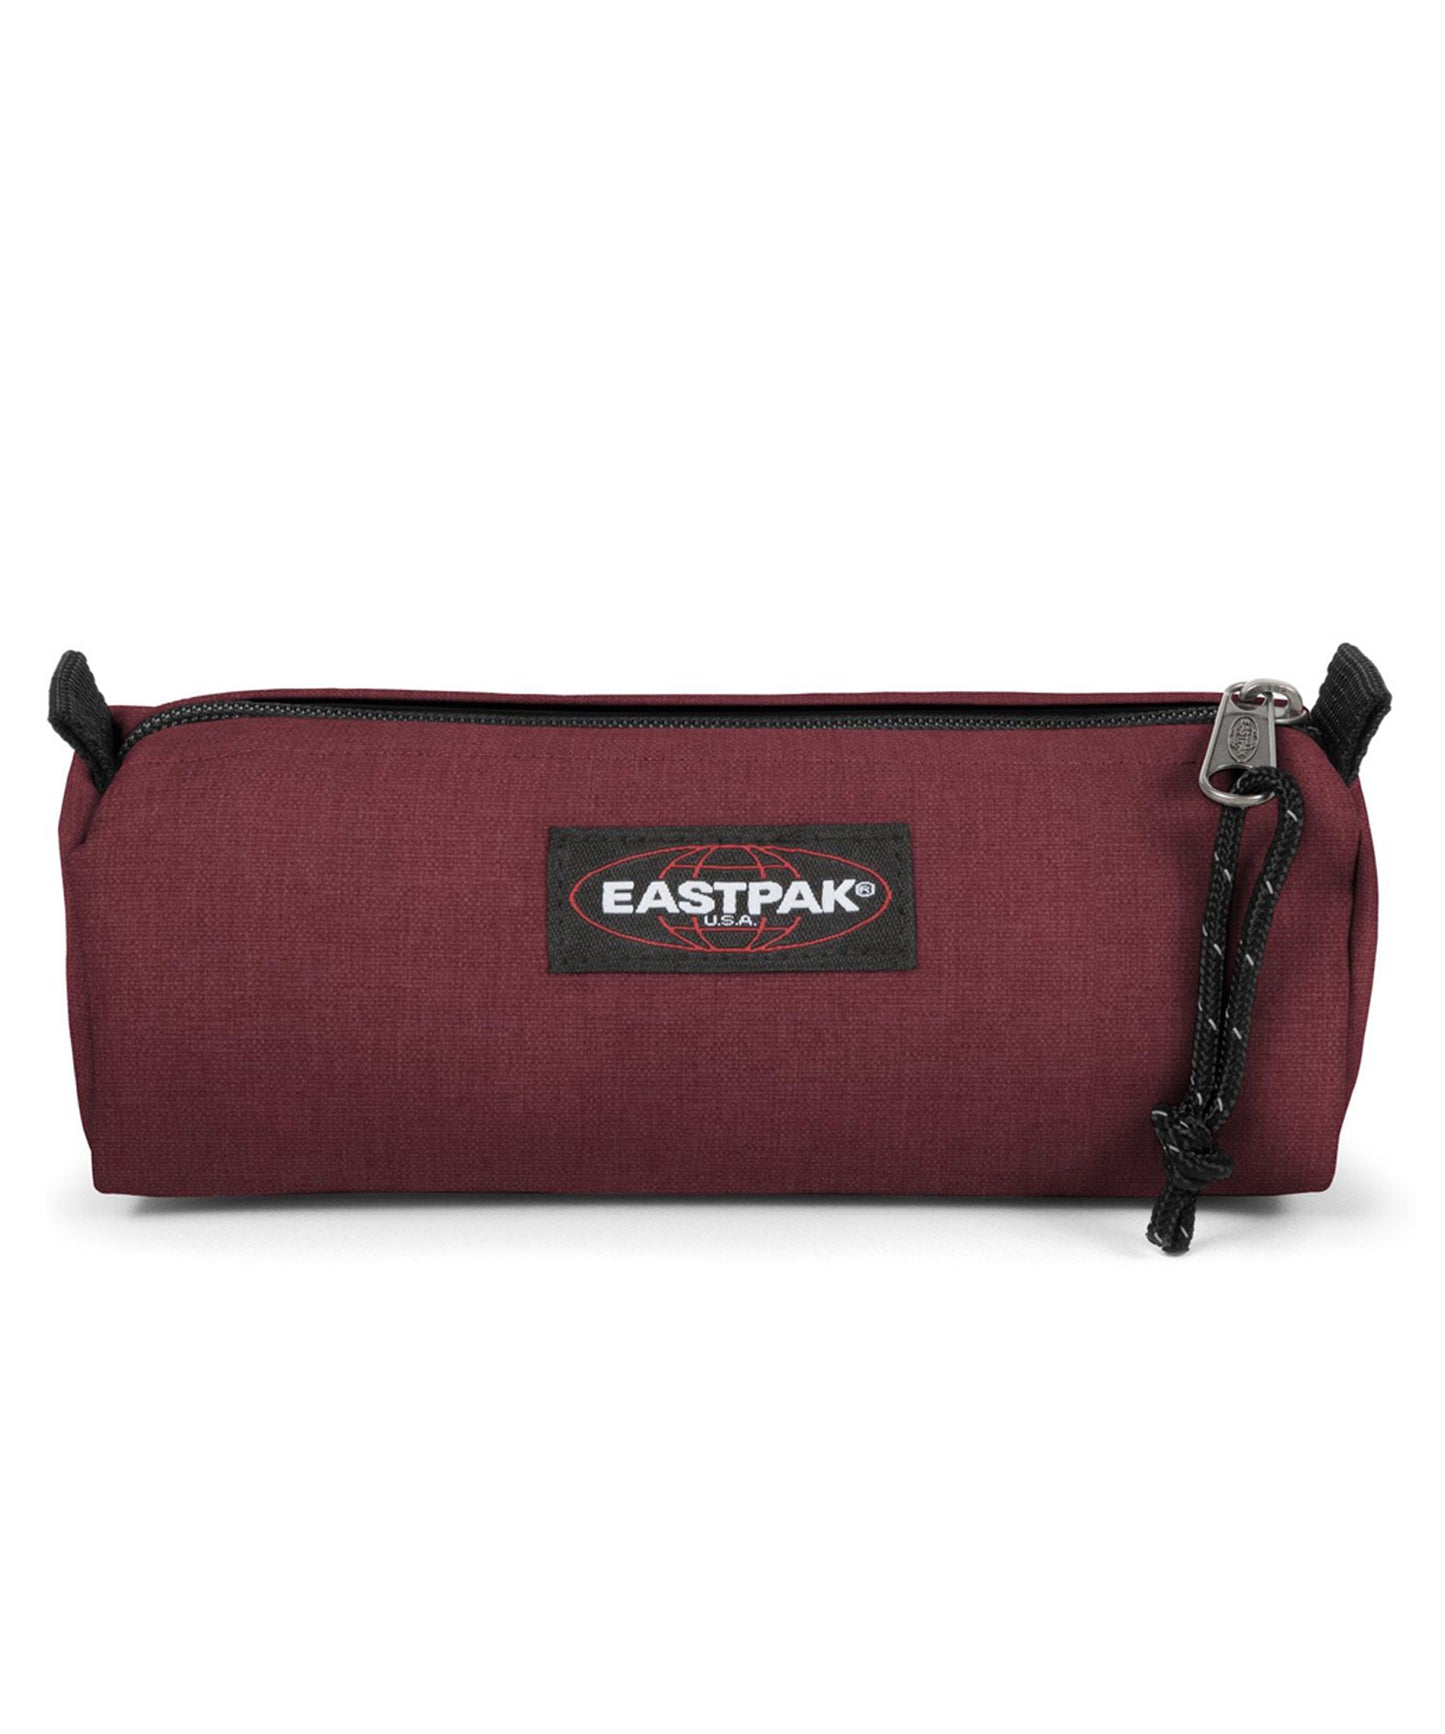 eastpak estuche benchmark de color granate, practico, sencillo, y duradero, cierre con cremallera.